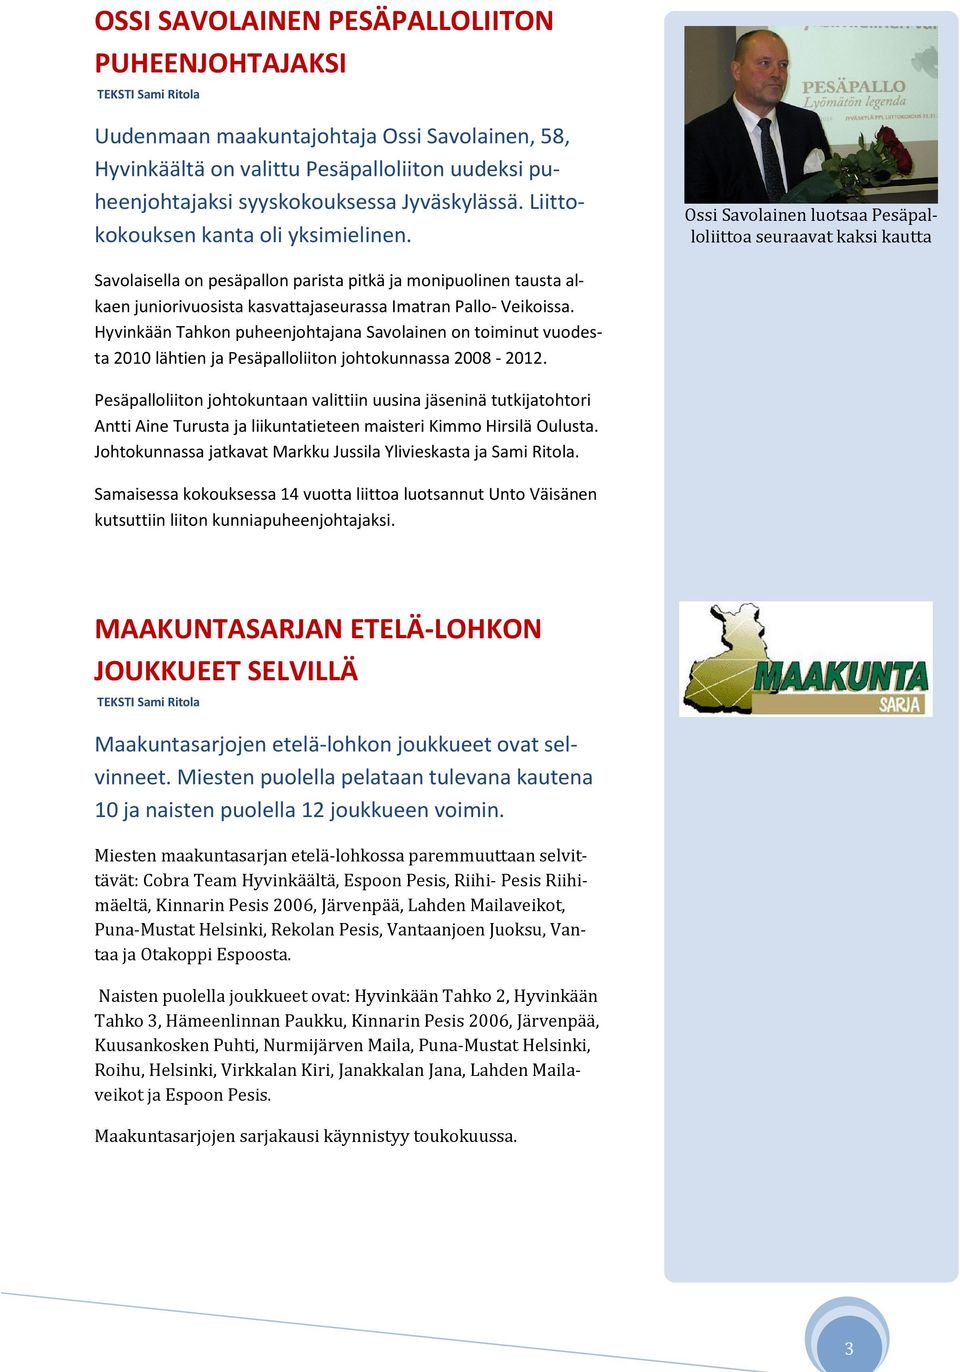 Ossi Savolainen luotsaa Pesäpalloliittoa seuraavat kaksi kautta Savolaisella on pesäpallon parista pitkä ja monipuolinen tausta alkaen juniorivuosista kasvattajaseurassa Imatran Pallo- Veikoissa.